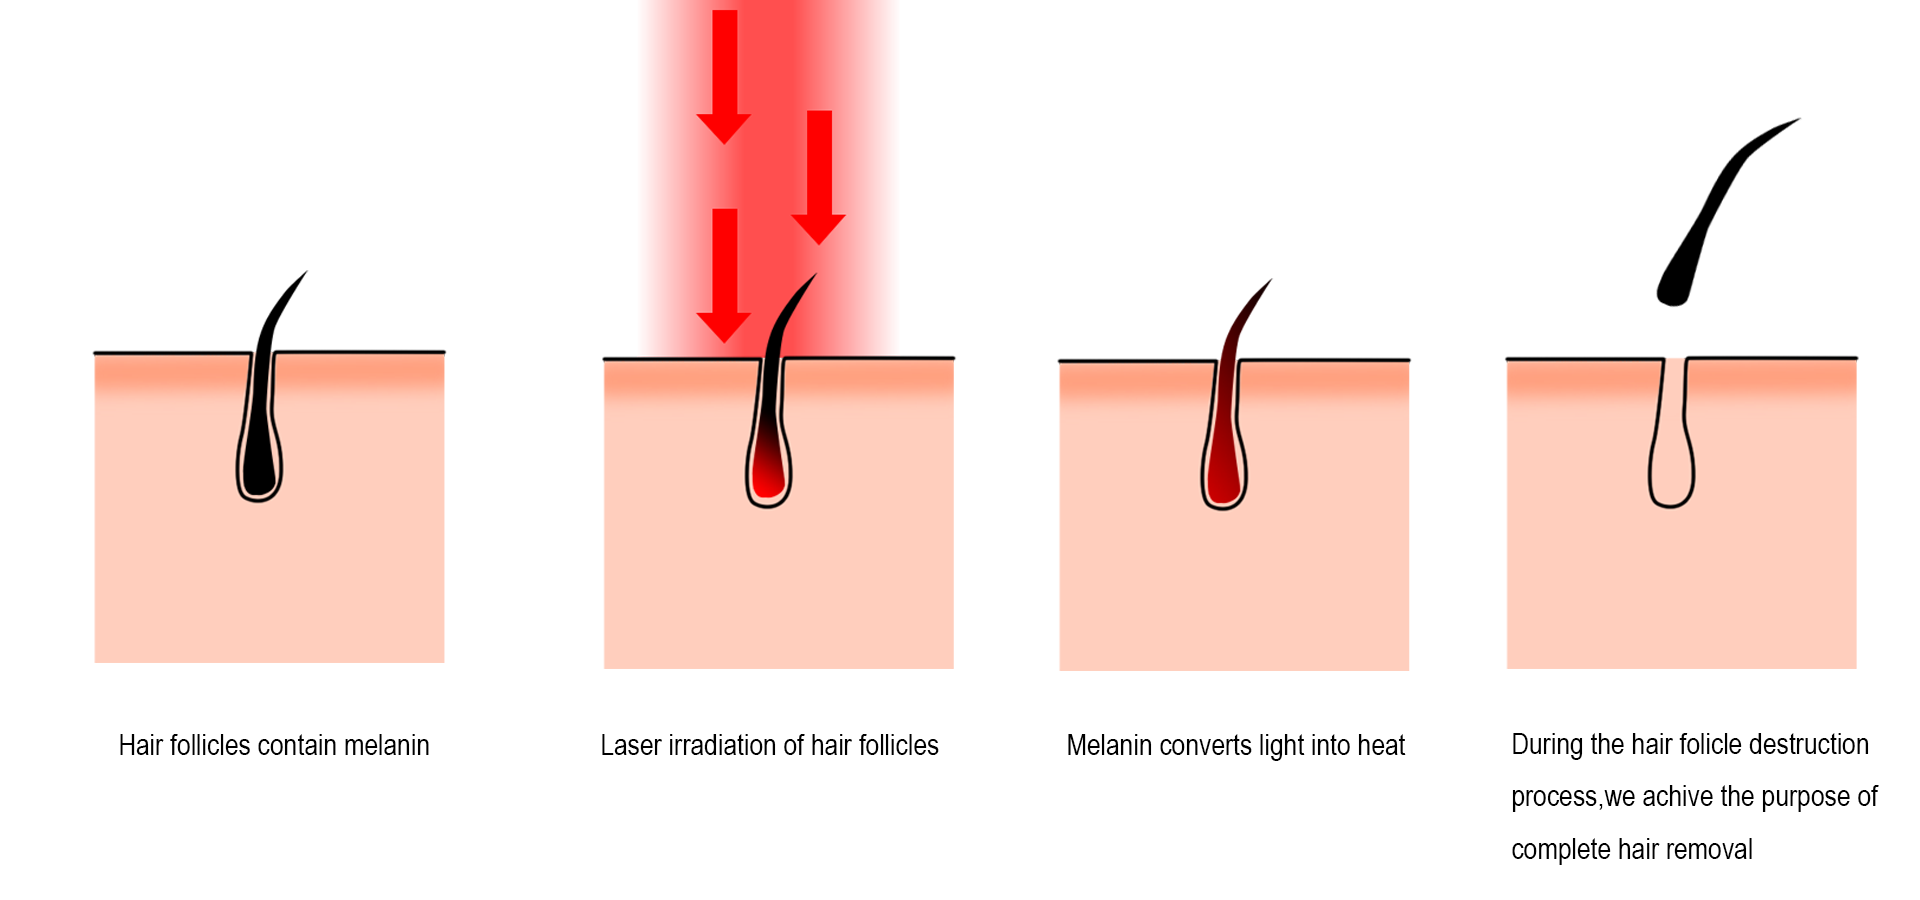 Progrés de la depilació làser - Com eliminar el cabell amb làser de manera eficient.